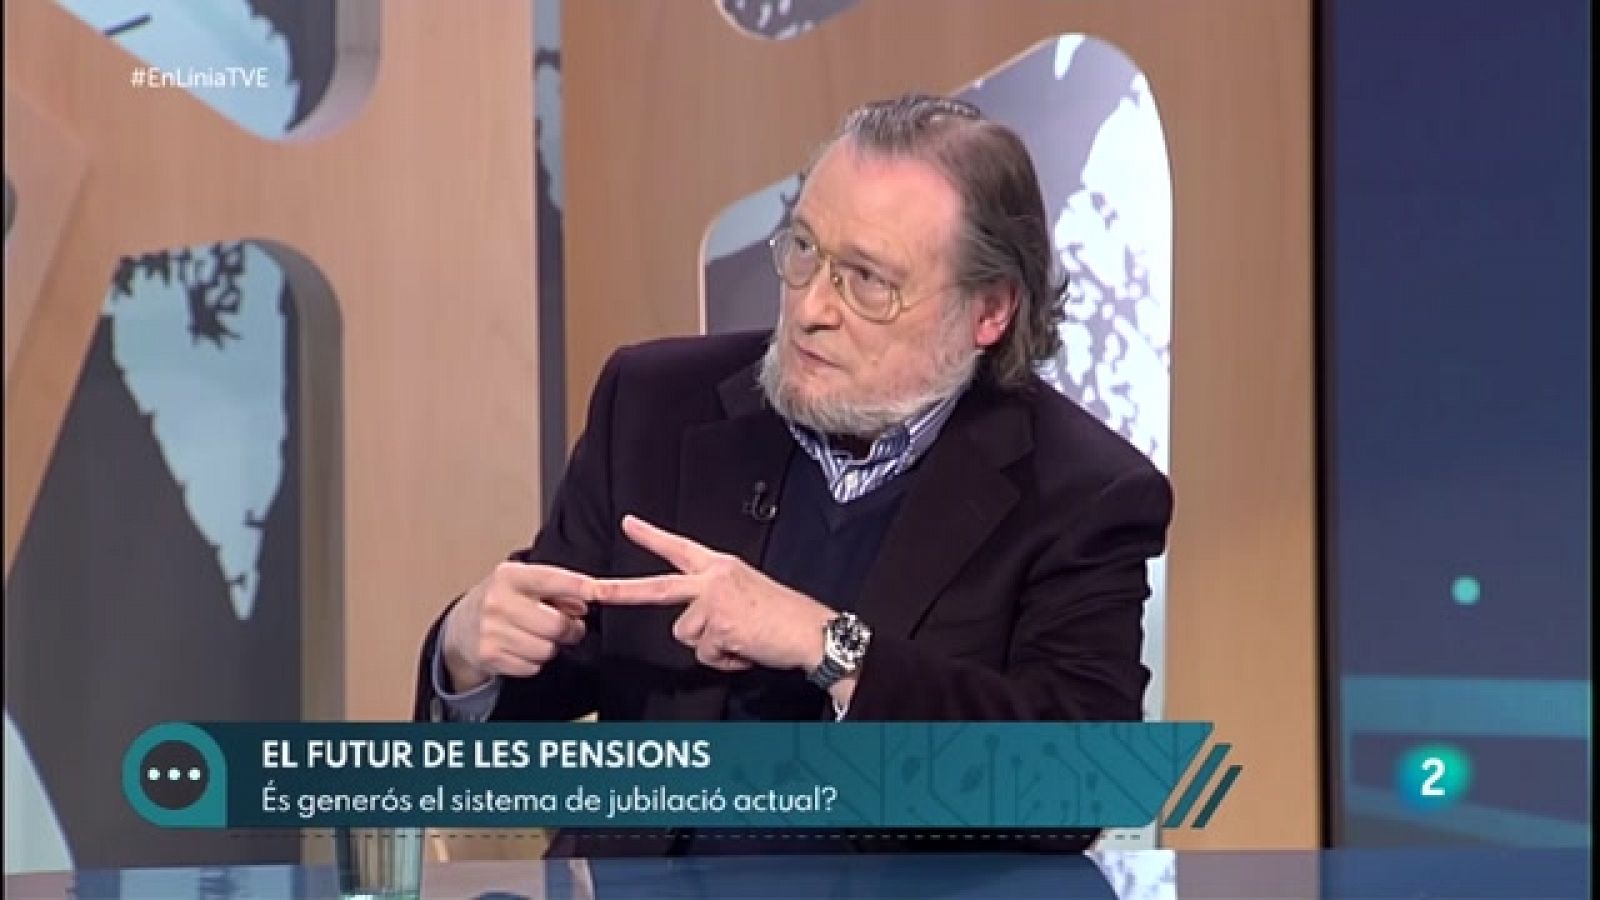 El futur de les pensions | En Línia - RTVE Catalunya